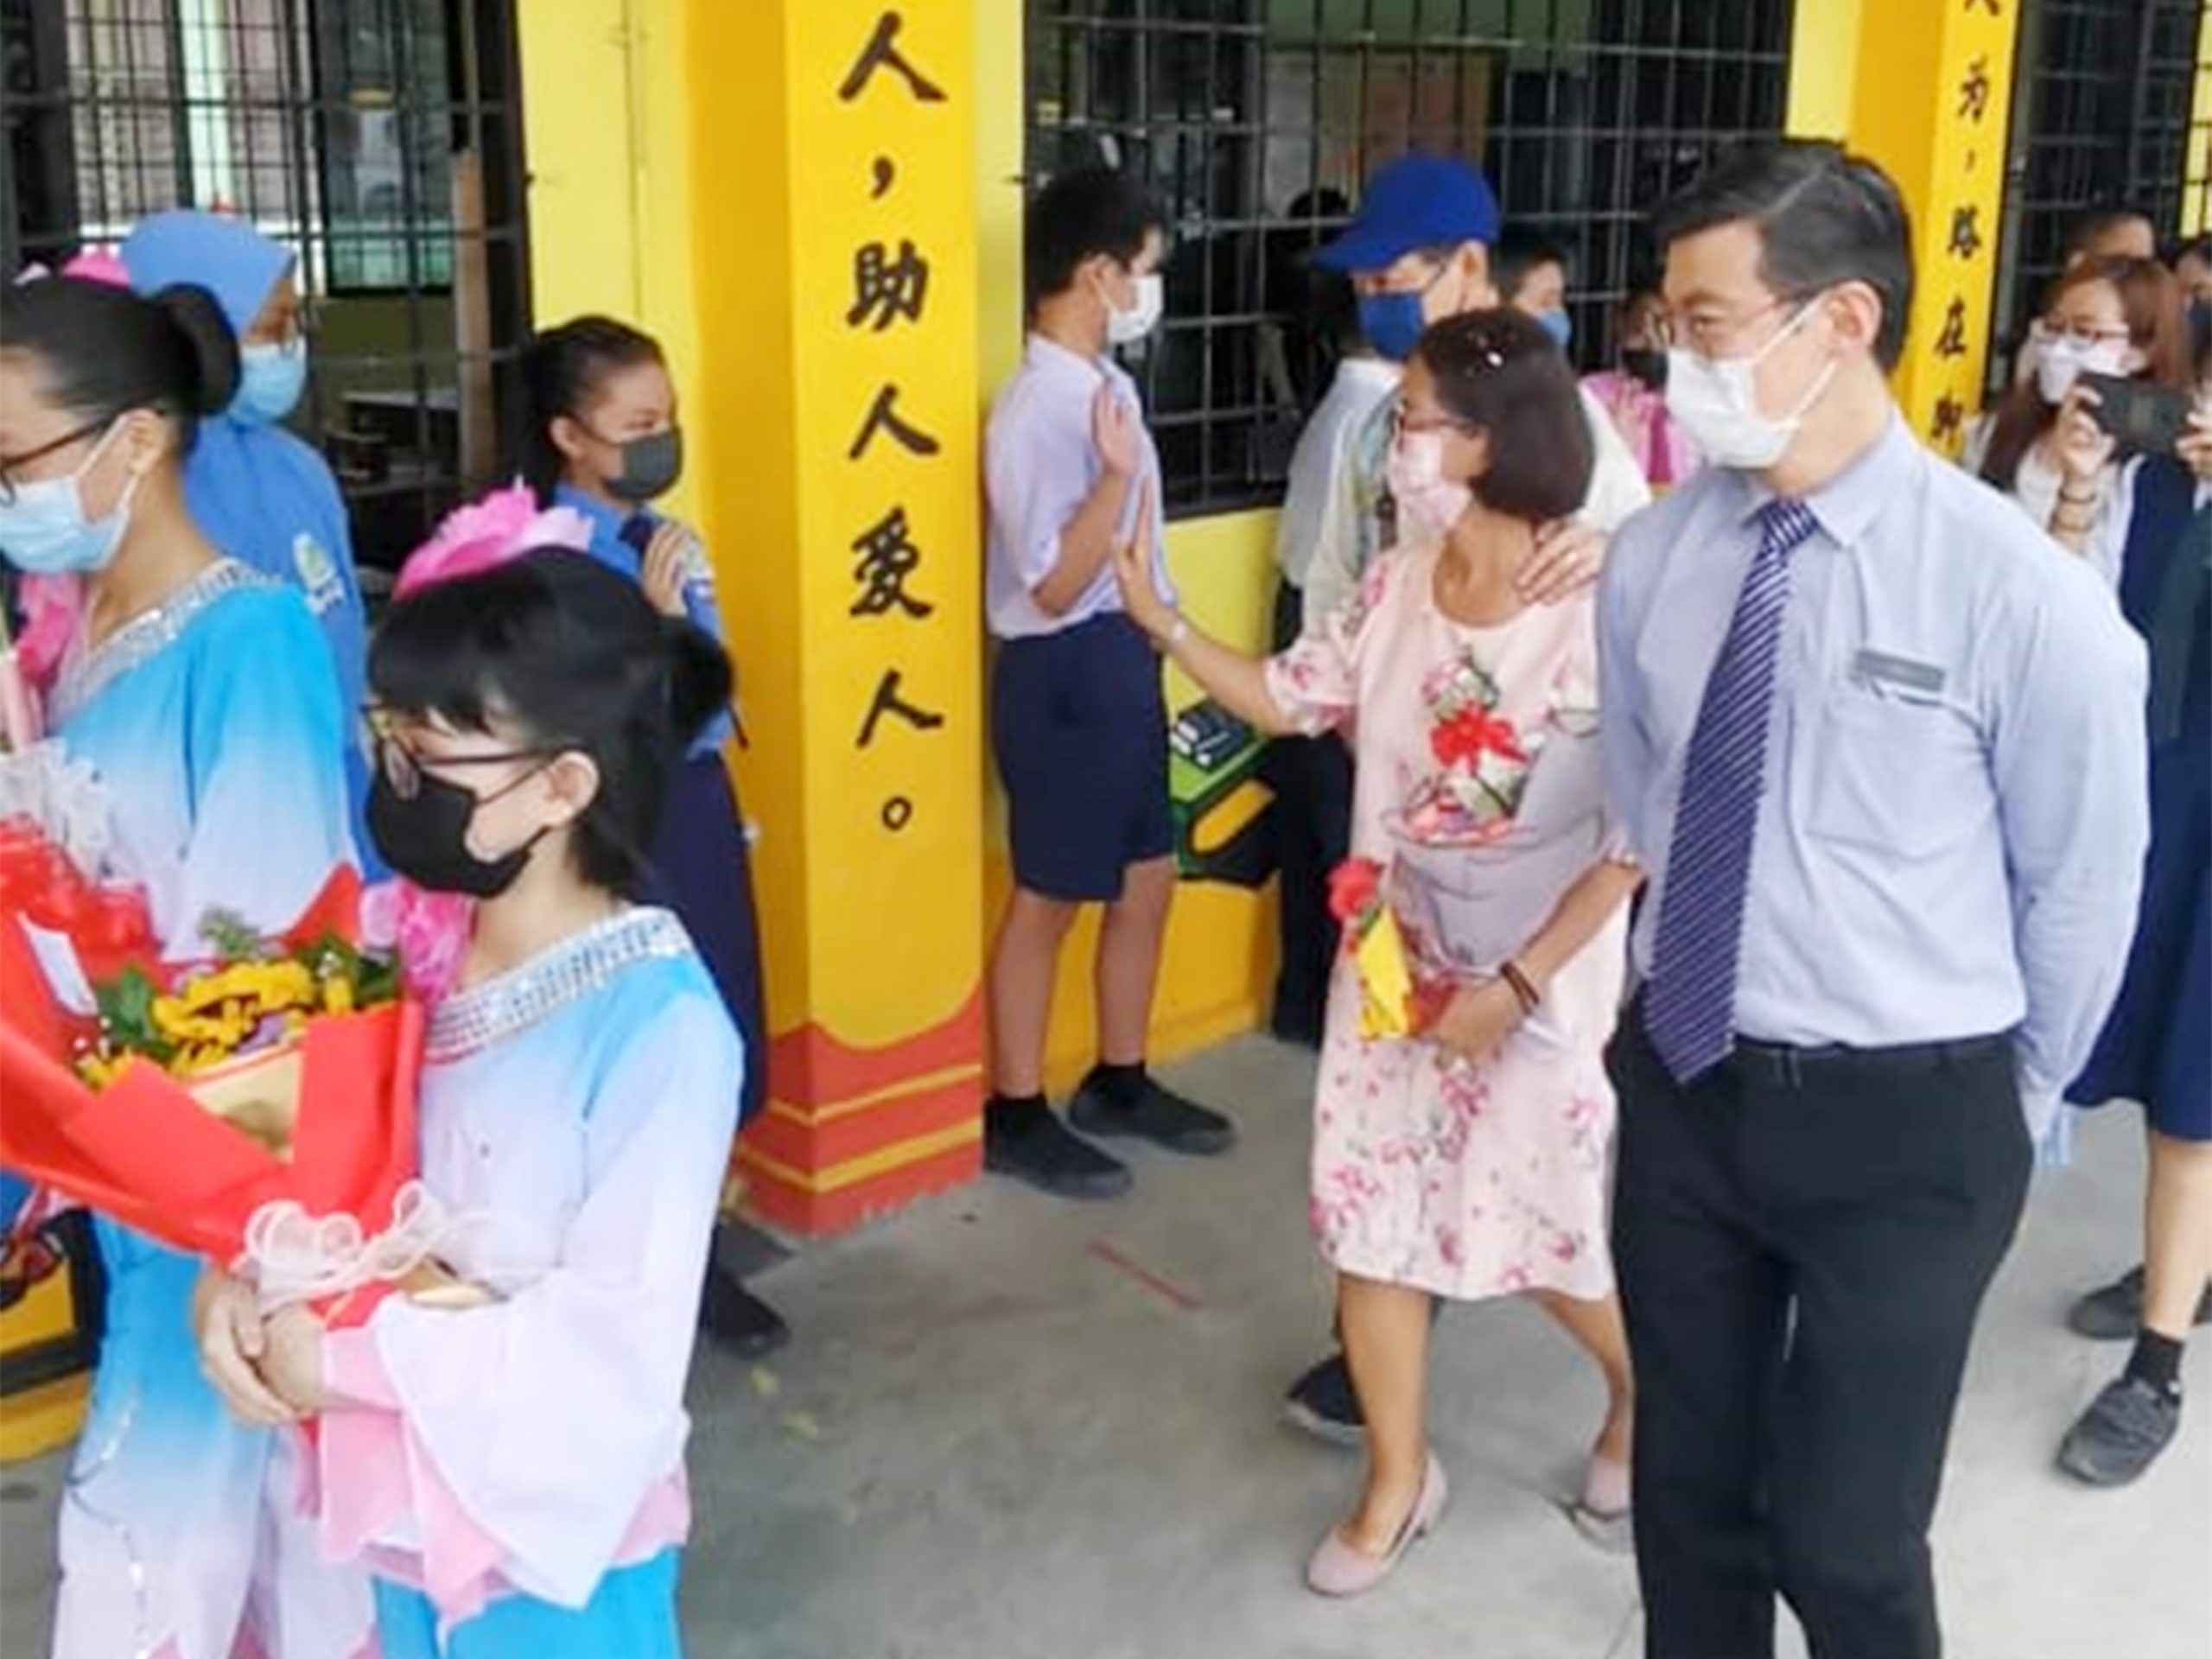 NS庇朥/ 冷宜培群华小林翠英副校长退休告别教育杏坛。